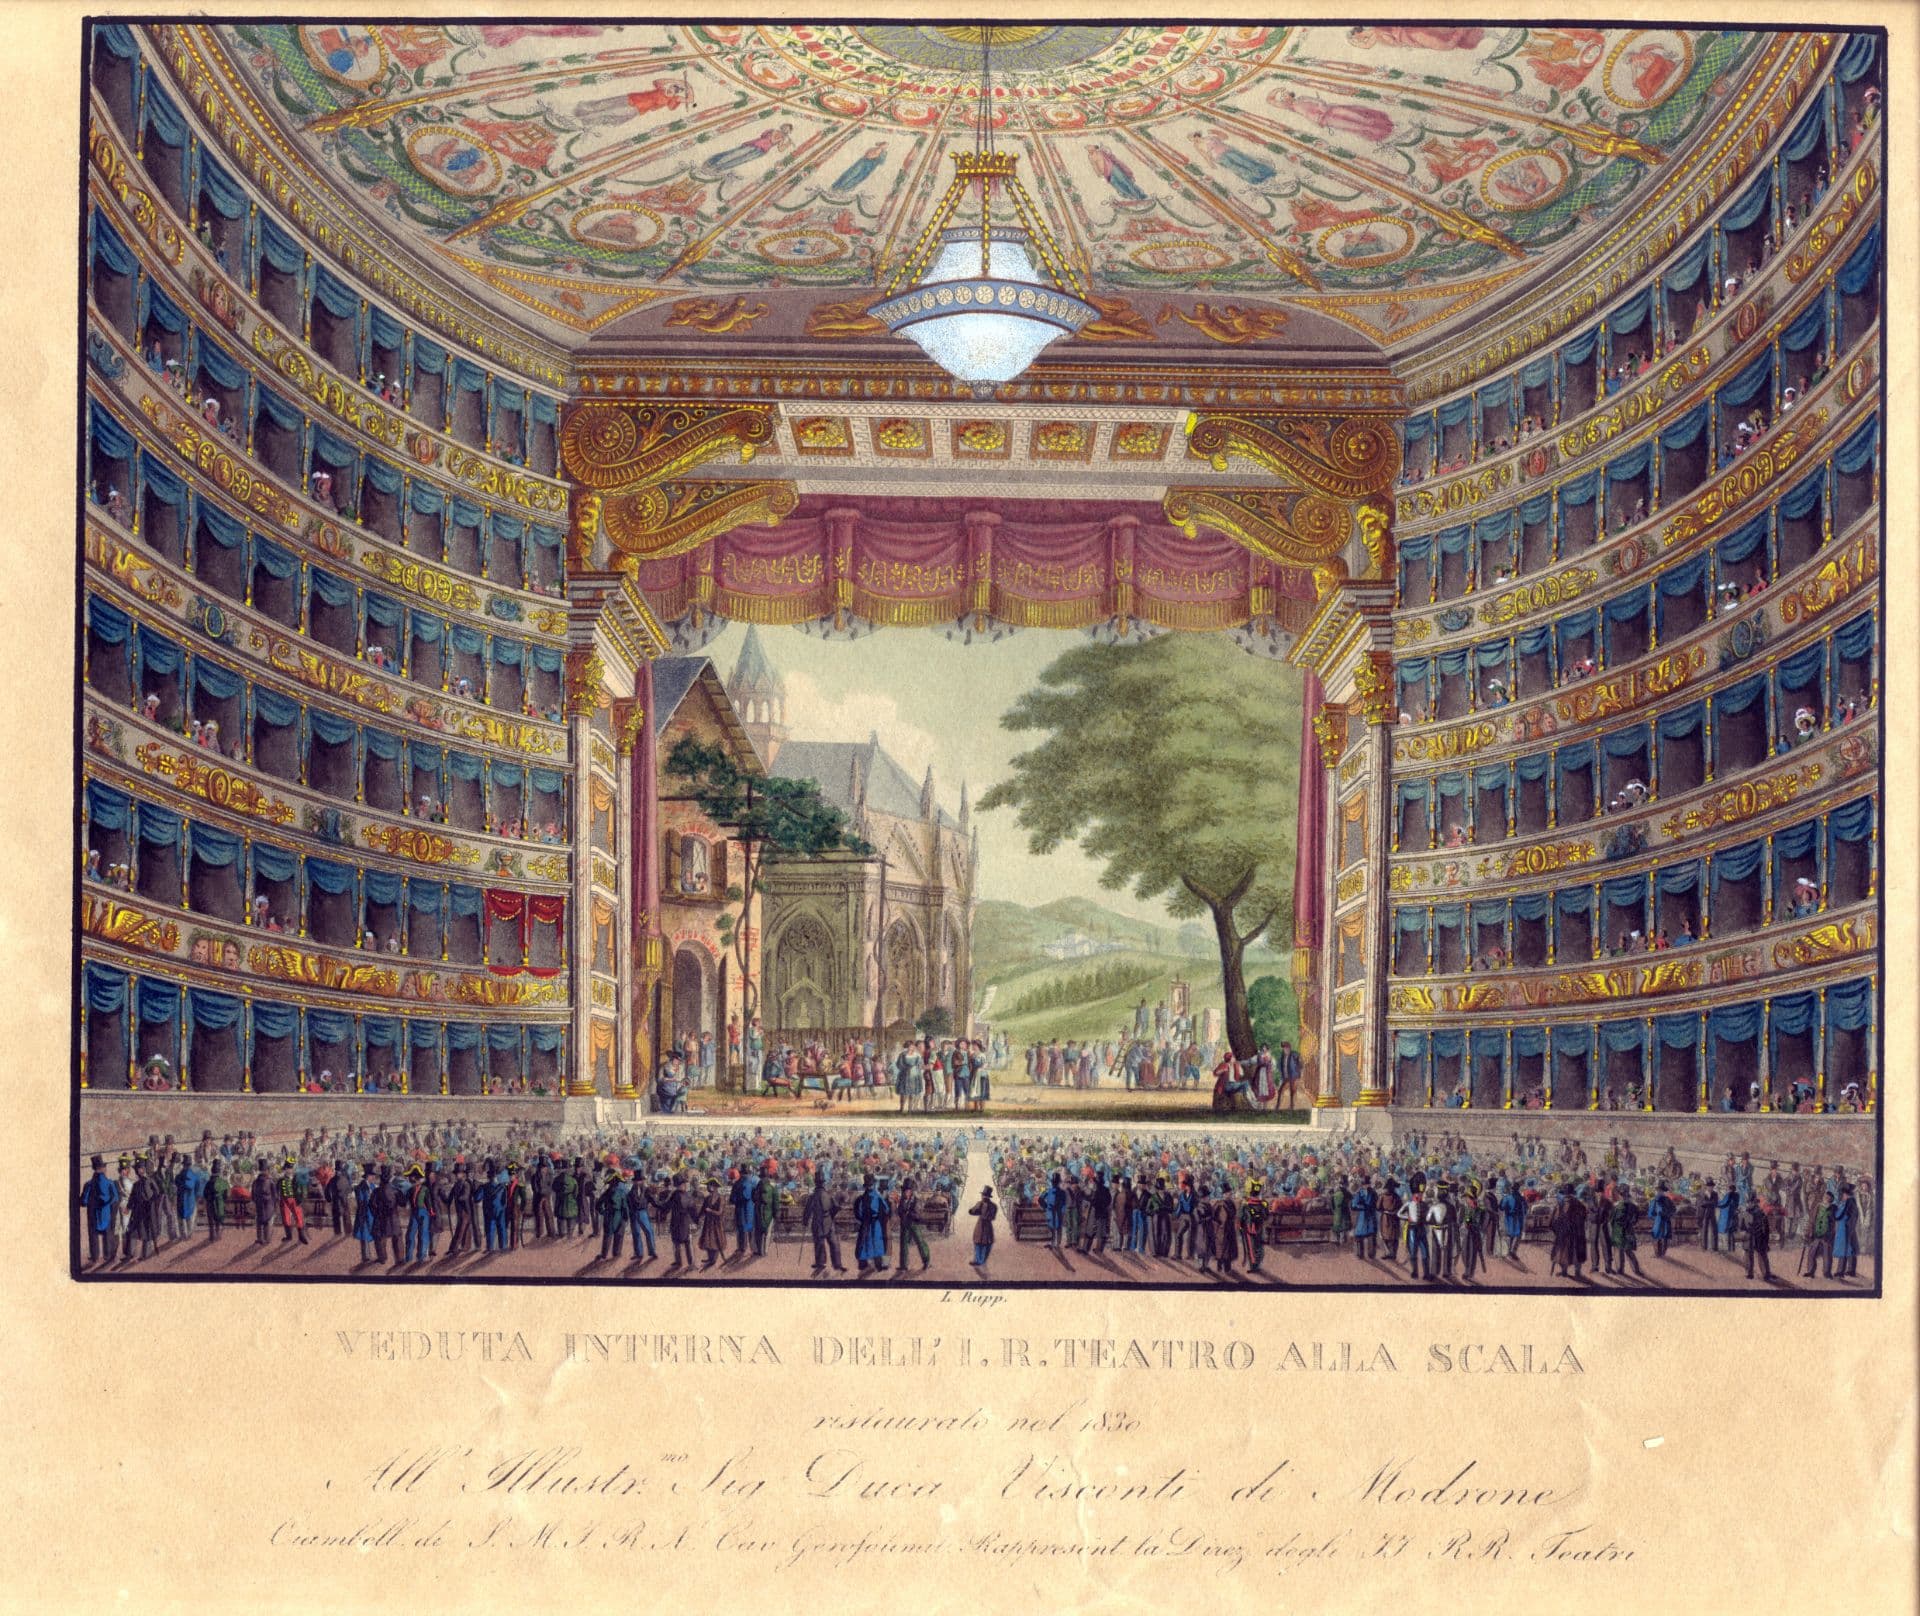 L'immagine mostra una veduta d’insieme dell’interno del Teatro alla Scala, dal fondo della platea. Si tratta del riallestimento effettuato nel 1830 che ha visto i palchi e il loggione arricchiti di drappeggi blu. La platea è piena di persone, in gran parte sedute su panche a più posti, ma anche in piedi, sul fondo. Sul soffitto, al centro della platea, c’è il grande lampadario che fu collocato nel 1823, con 84 lumi a petrolio. Sul palco, le scenografie mostrano a destra un grande albero con chioma verde in primo piano e più indietro un paesaggio collinare. A sinistra, una grande casa con due persone affacciate alla finestra sopra al portone e, più indietro, una cattedrale. Il palco è popolato da una moltitudine di persone, in parte in piedi e in parte sedute.